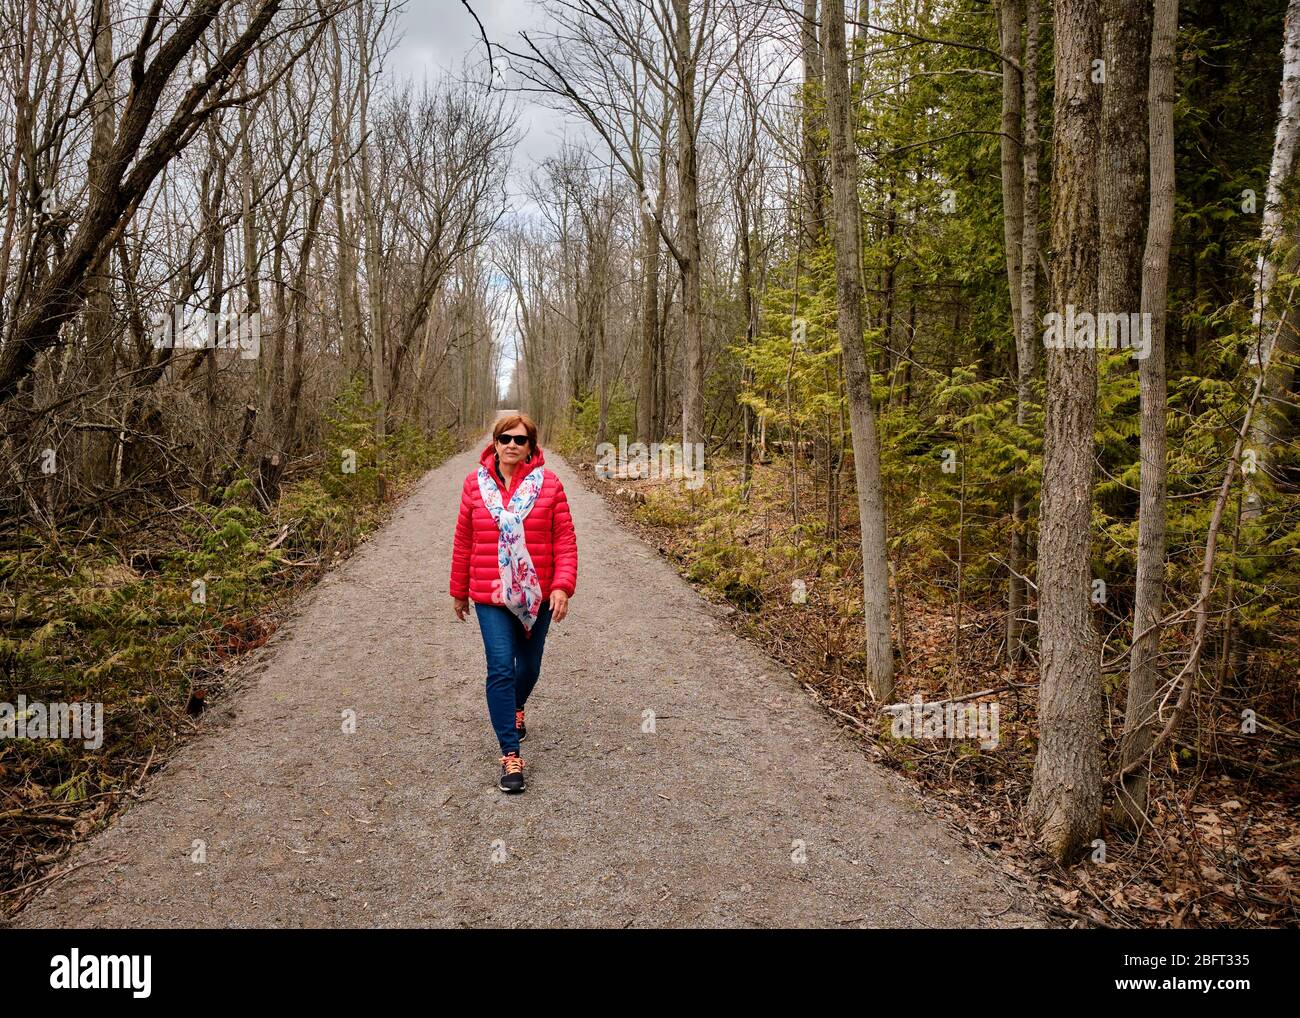 Una donna che indossa un cappotto rosso brillante cammina da sola lungo un sentiero forestale durante la pandemia Covid-19. Foto Stock